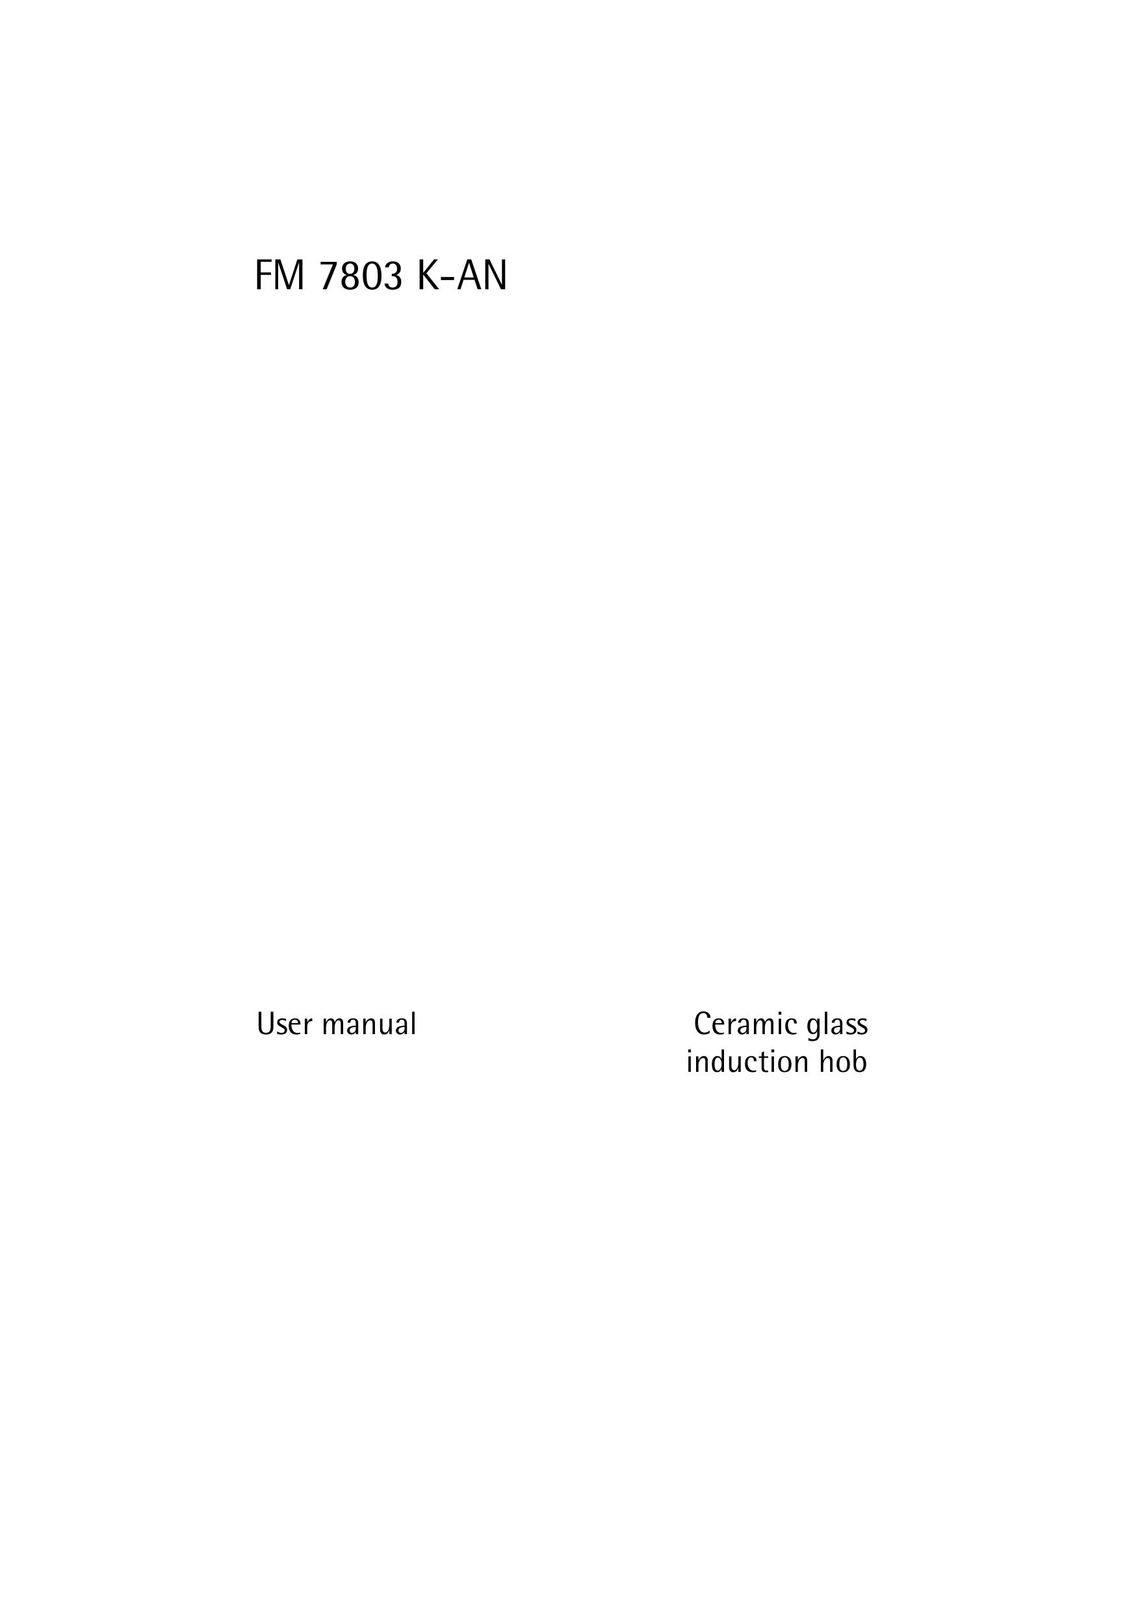 Electrolux FM 7803 K-AN Egg Cooker User Manual